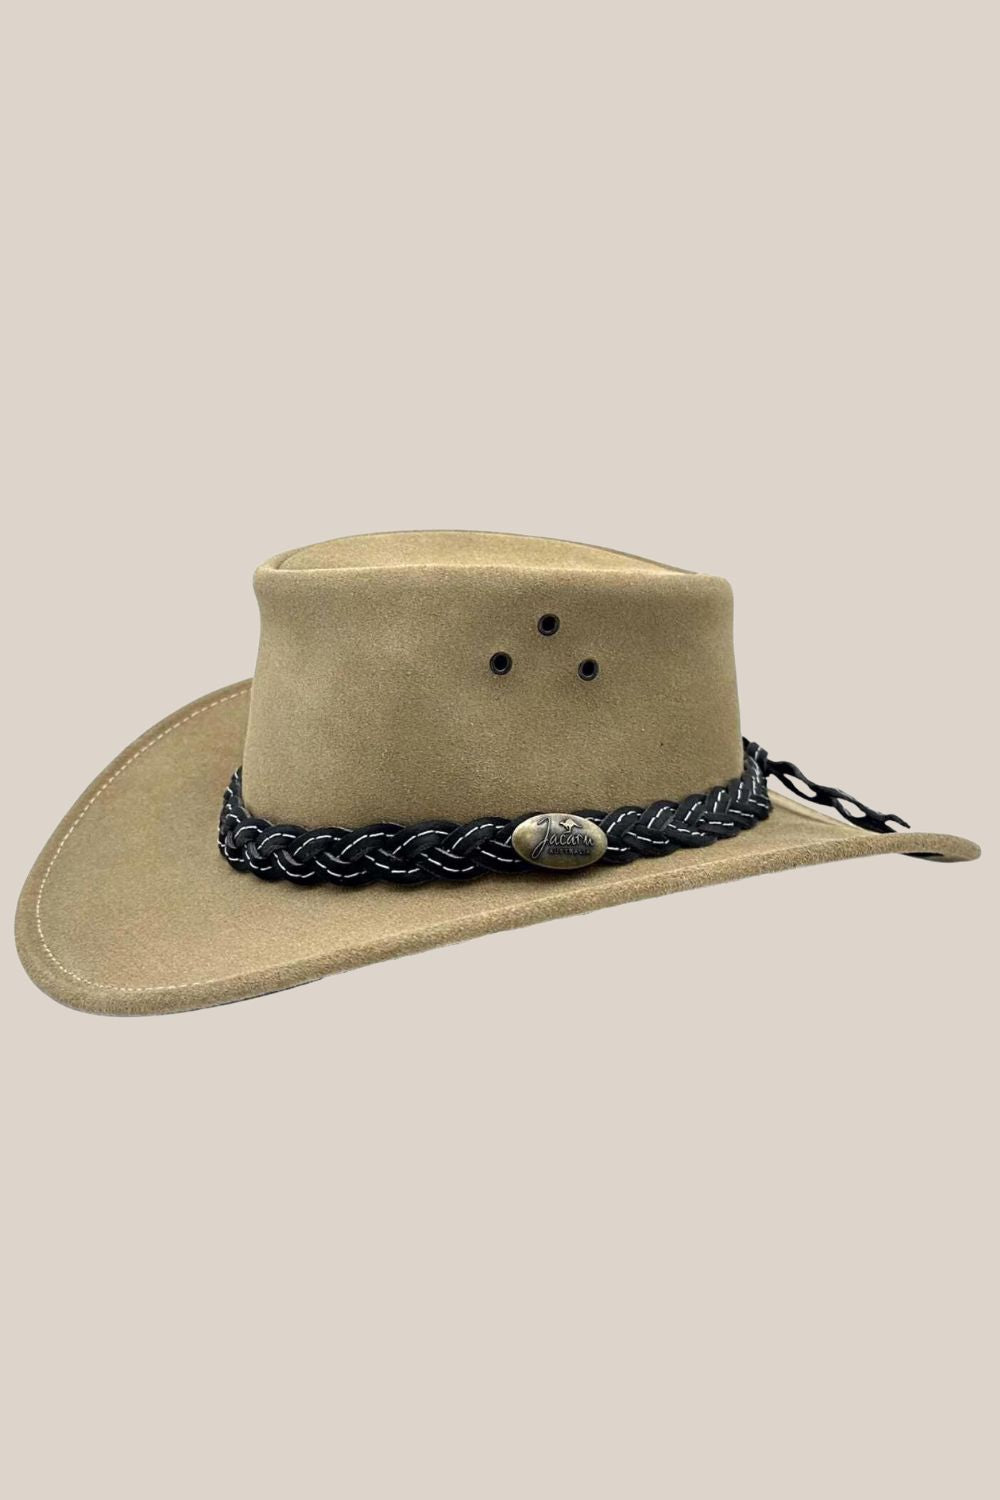 Jacaru Wallaroo Suede Hat